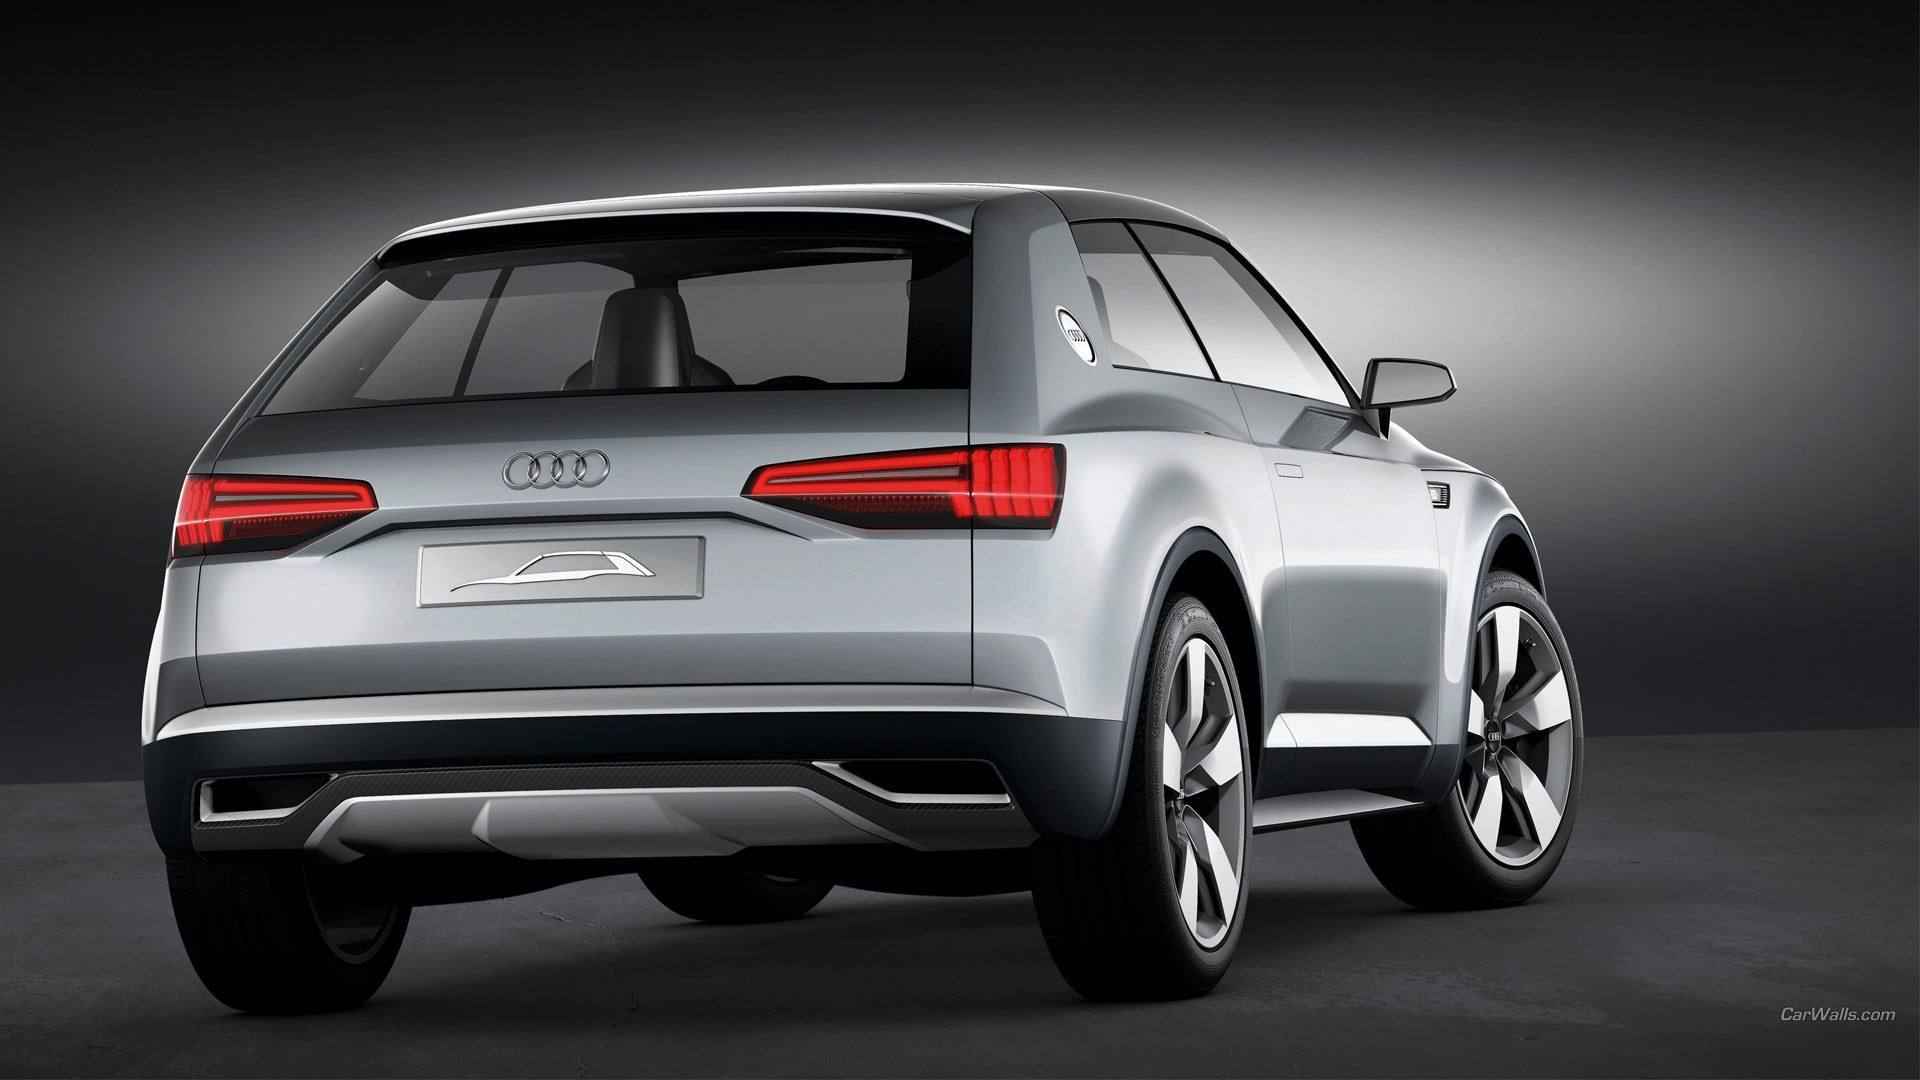 Audi_Crossline概率SUV休旅车宣传海报壁纸图片-